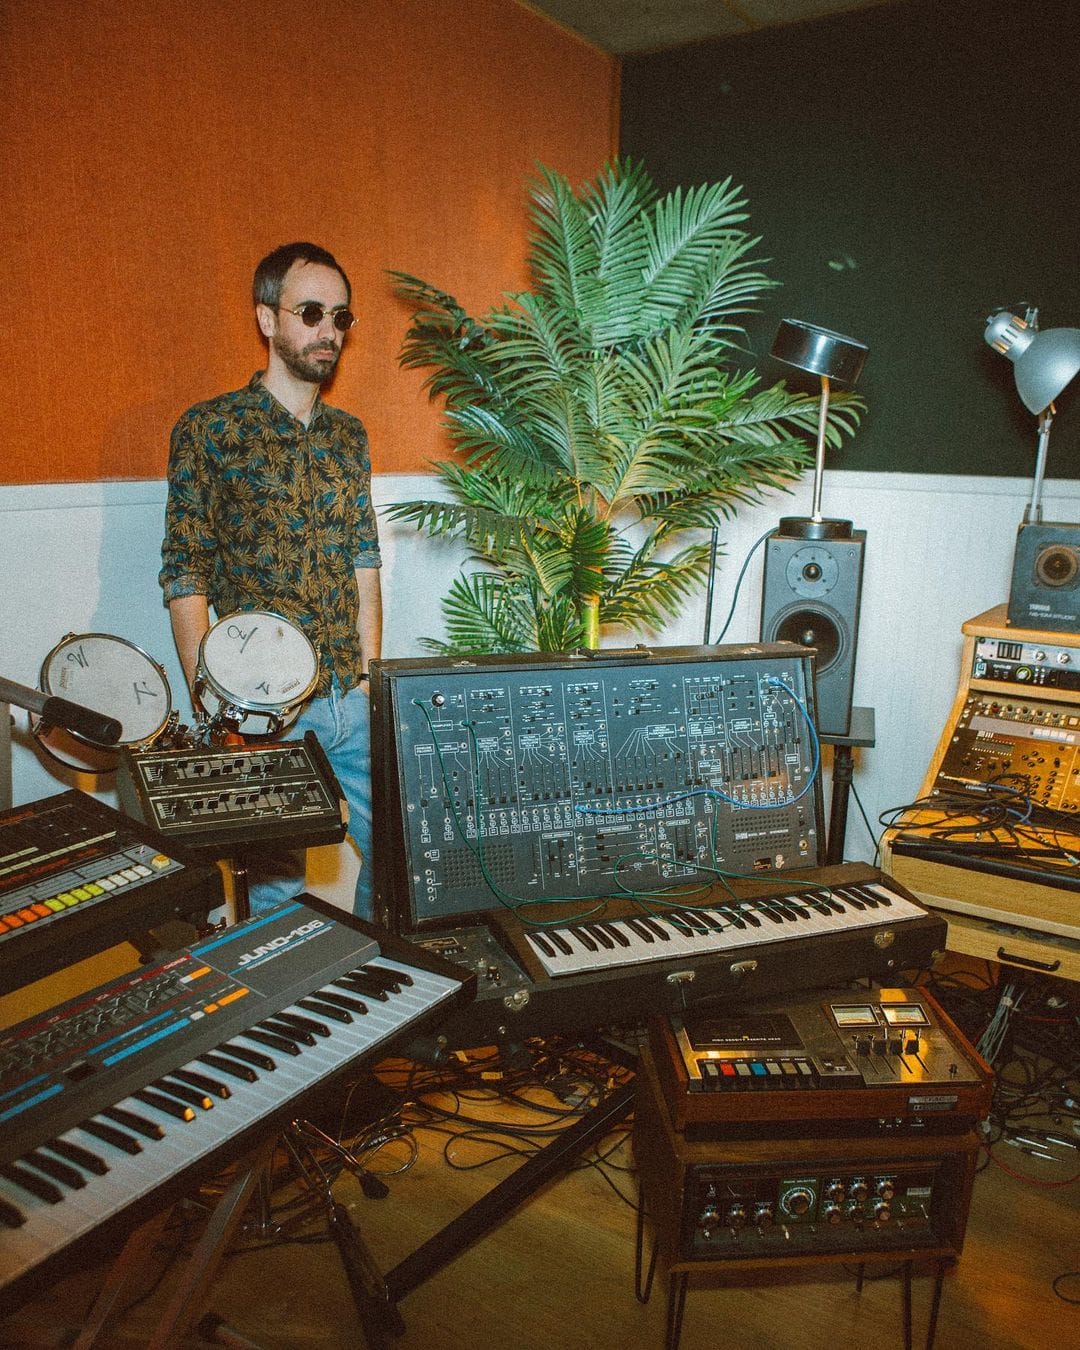 Image taser du projet Spectre, dont le premier volet est le titre Shin Sekai. Le DJ Para One dans son studio d'enregistrement, en chemise imprimée et lunettes de soleil. A côté de lui, un palmier et des murs orange et vert. 